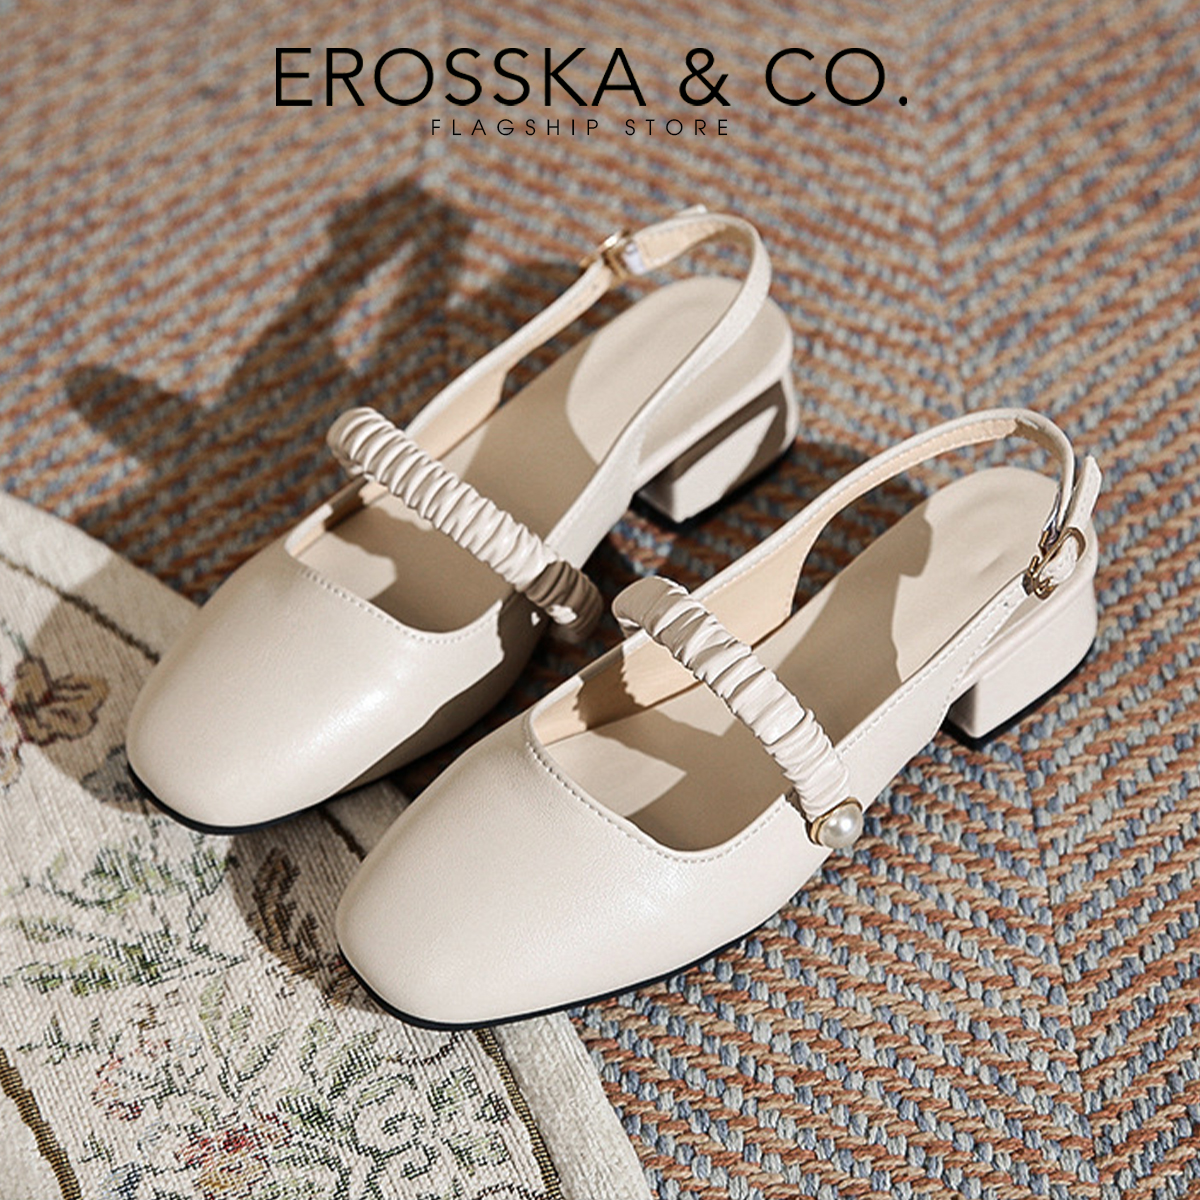 Giày cao gót Erosska quai ngang nhún ngọc cài hậu cao 3cm màu nude _ EL024